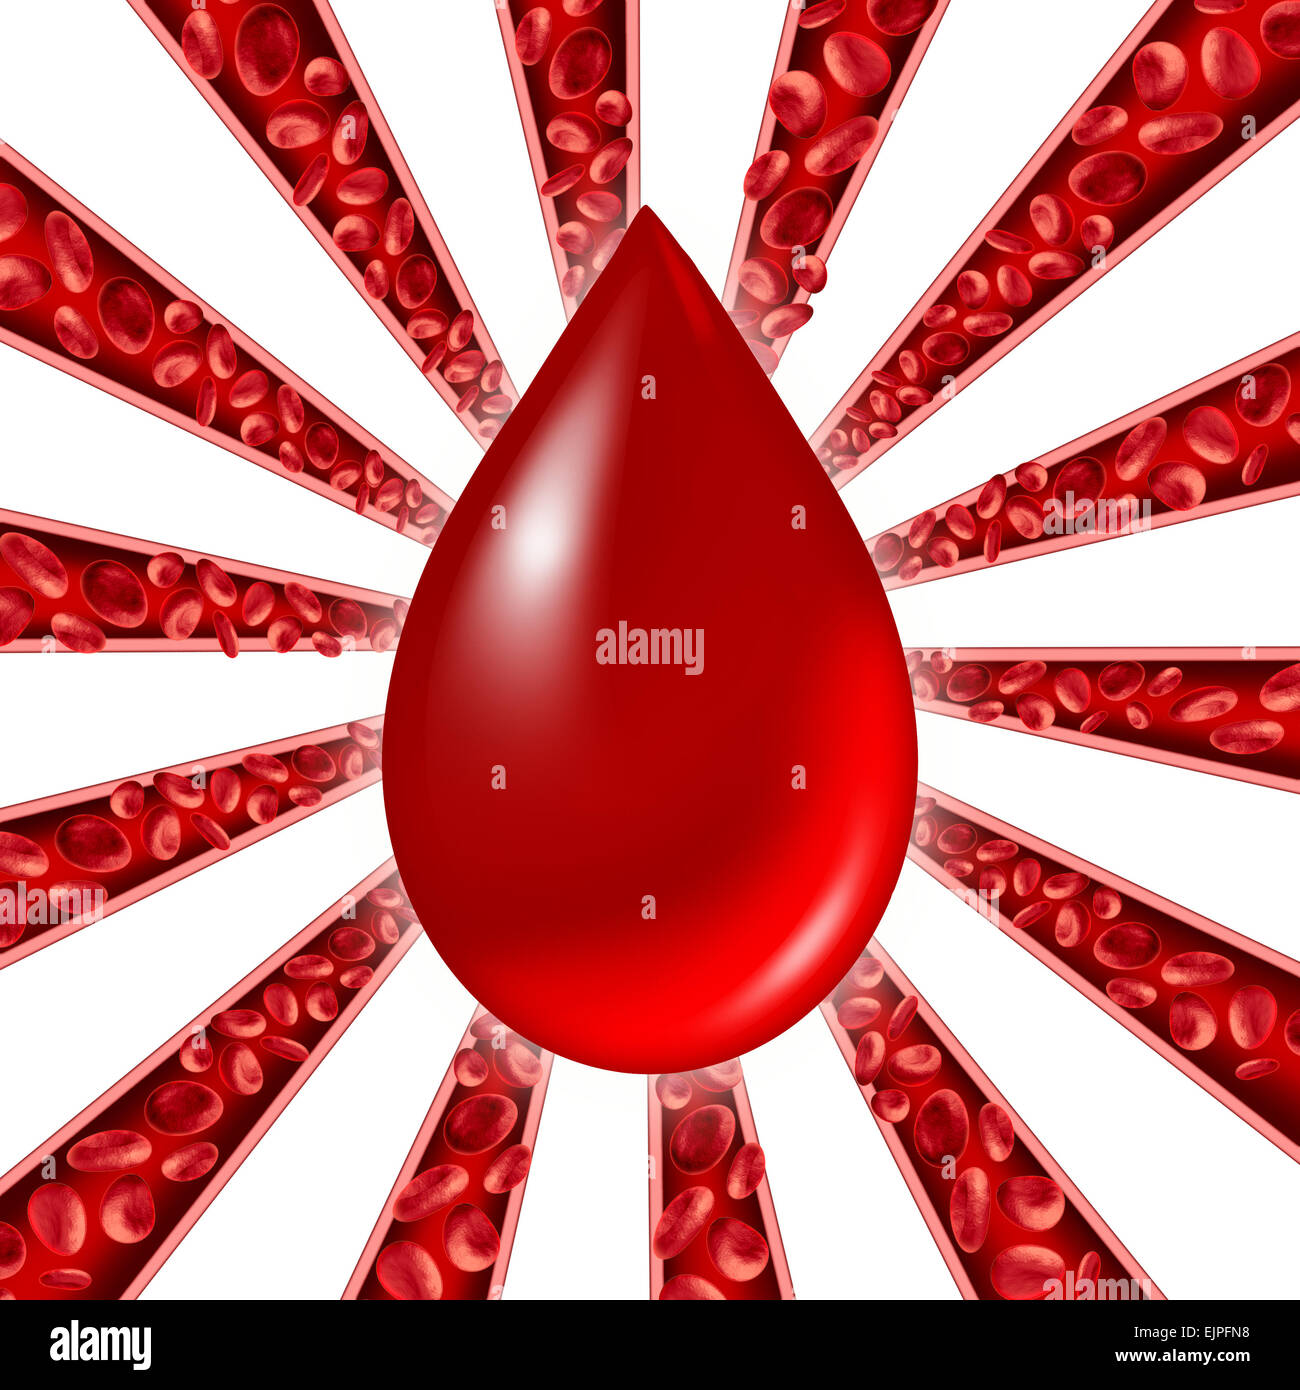 Símbolo de donación de sangre, como los glóbulos rojos que fluyen a través de las venas y sistema circulatorio humano con un grupo de arterias como un patrón en forma de estrella que representa un símbolo médico de atención de salud cardiovascular. Foto de stock